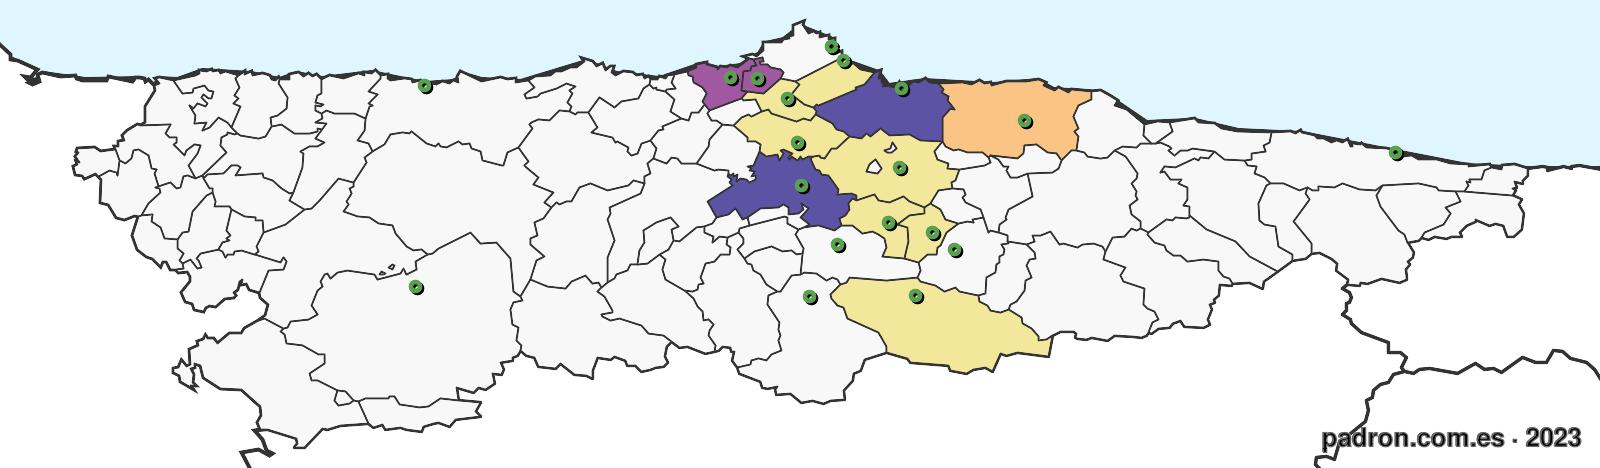 húngaros en asturias.